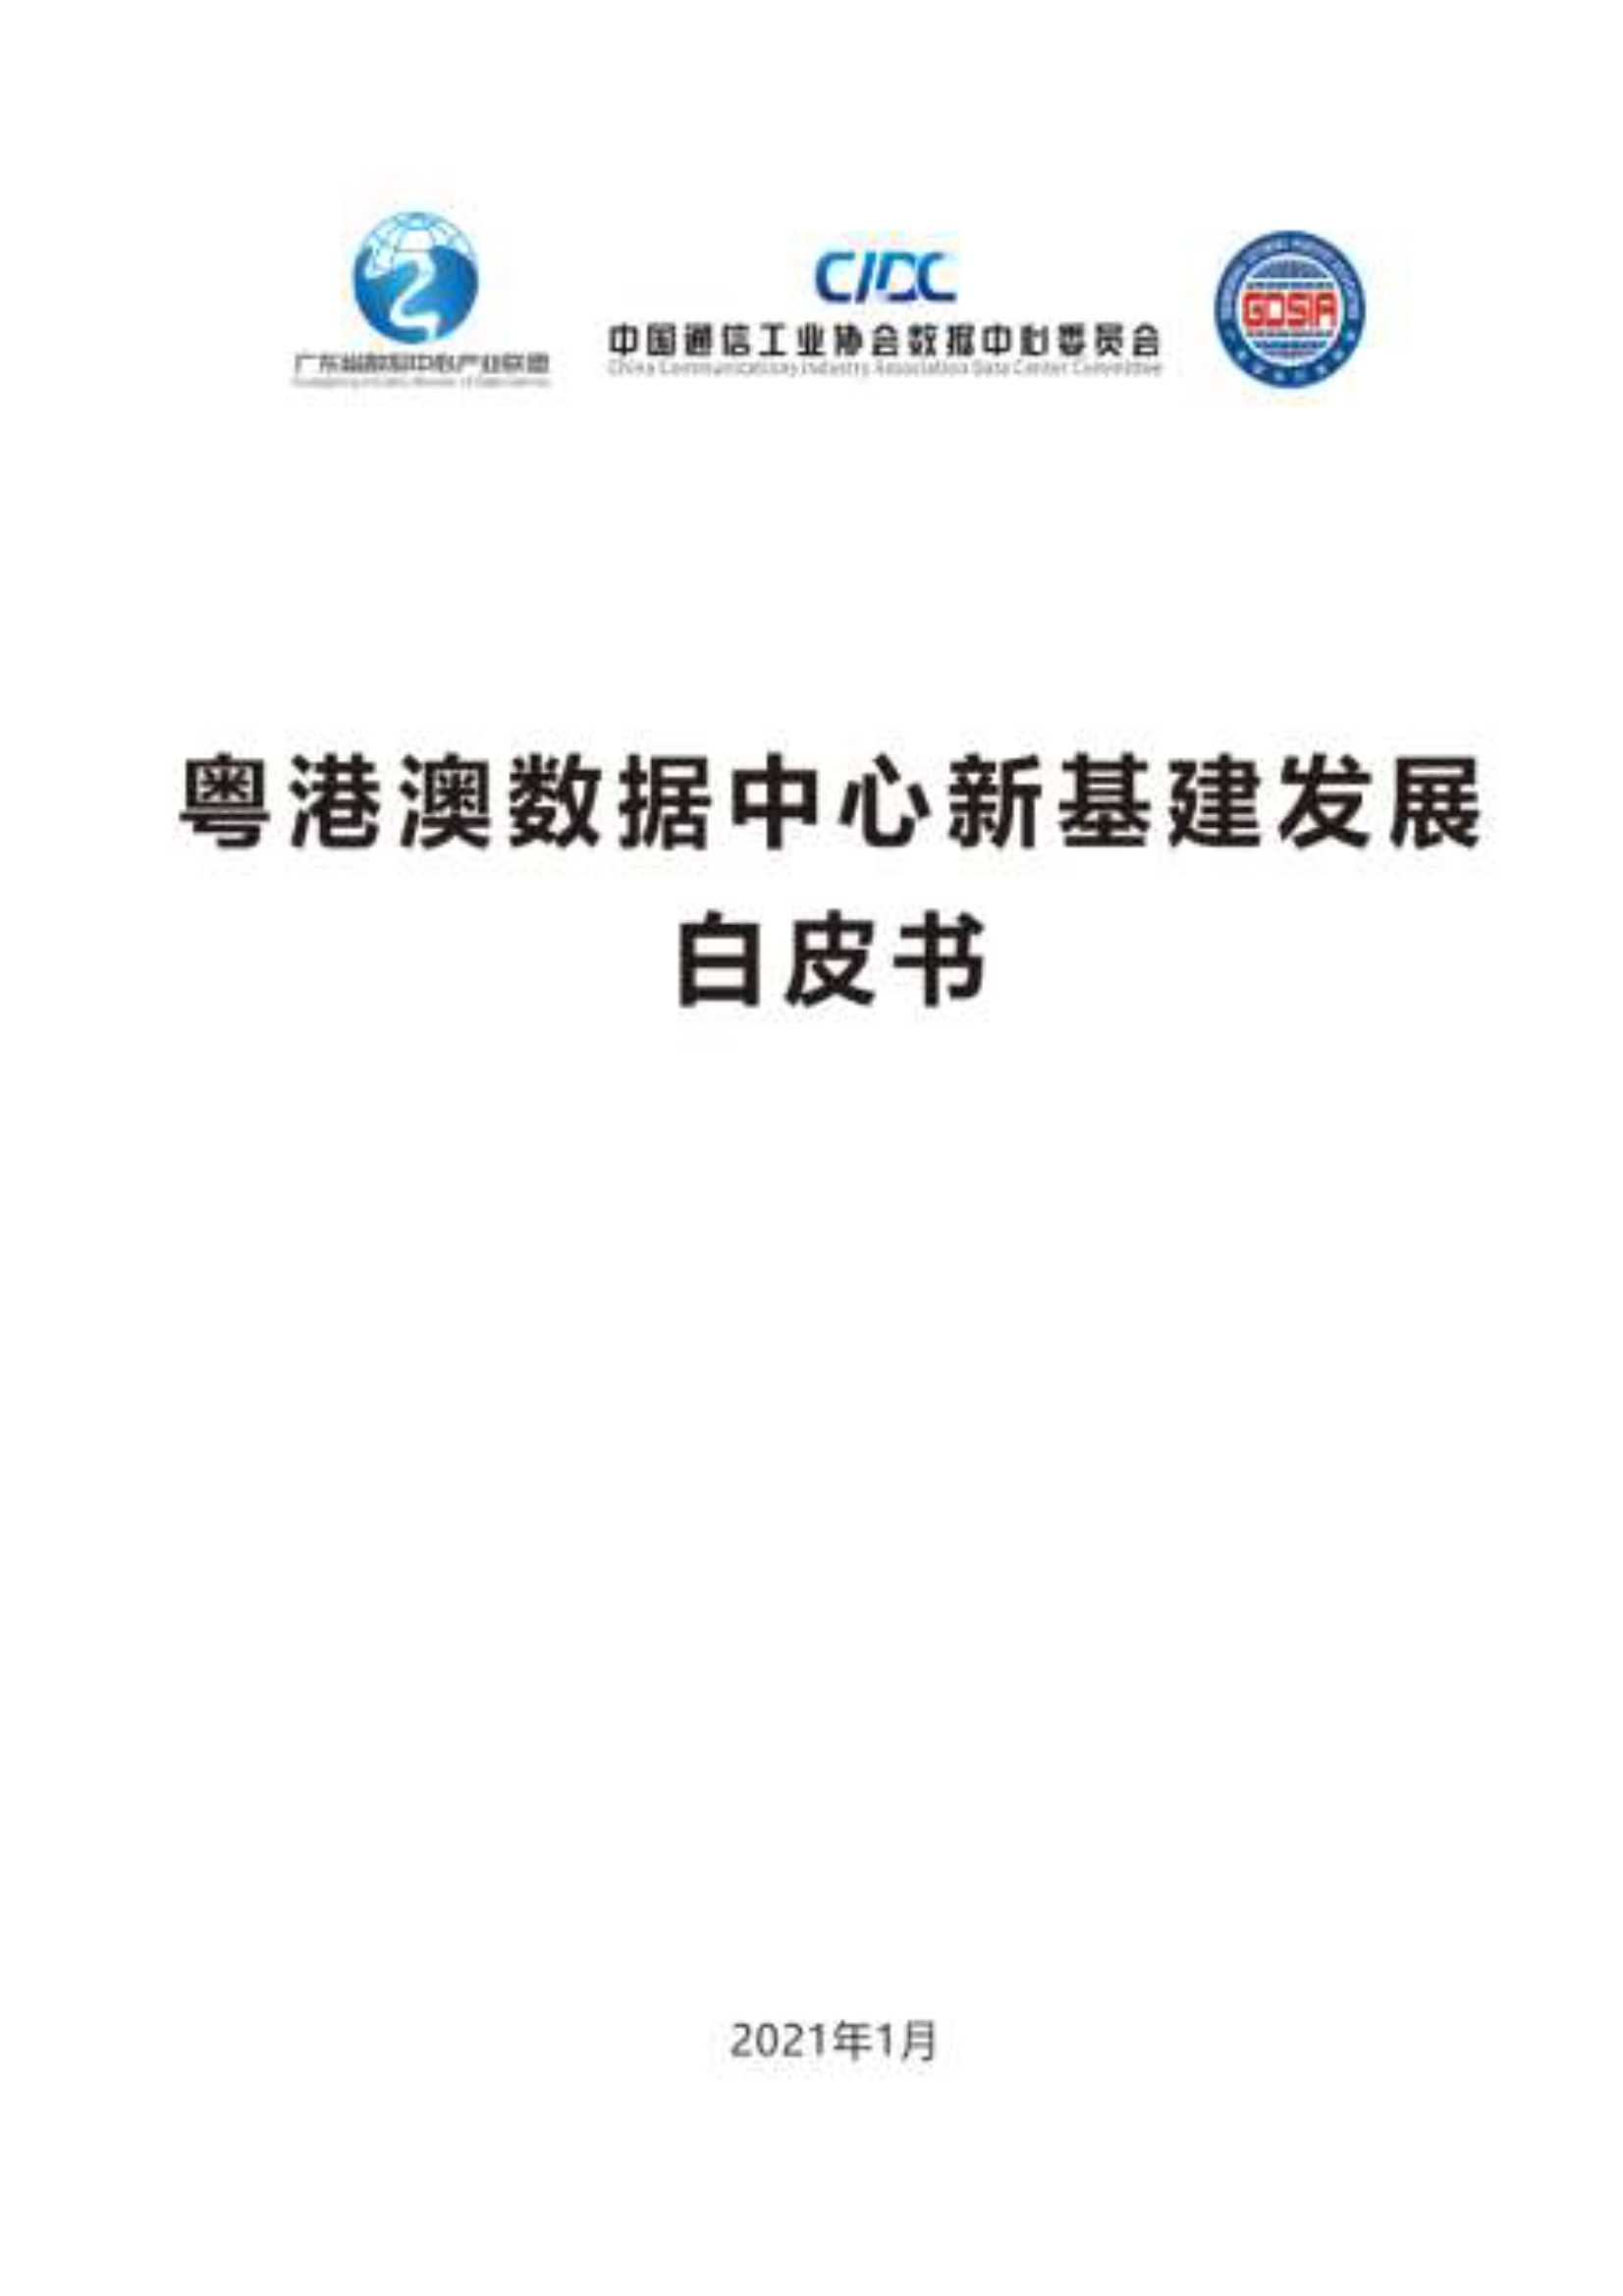 CIDC-粤港澳数据中心新基建发展白皮书-2021.06-76页